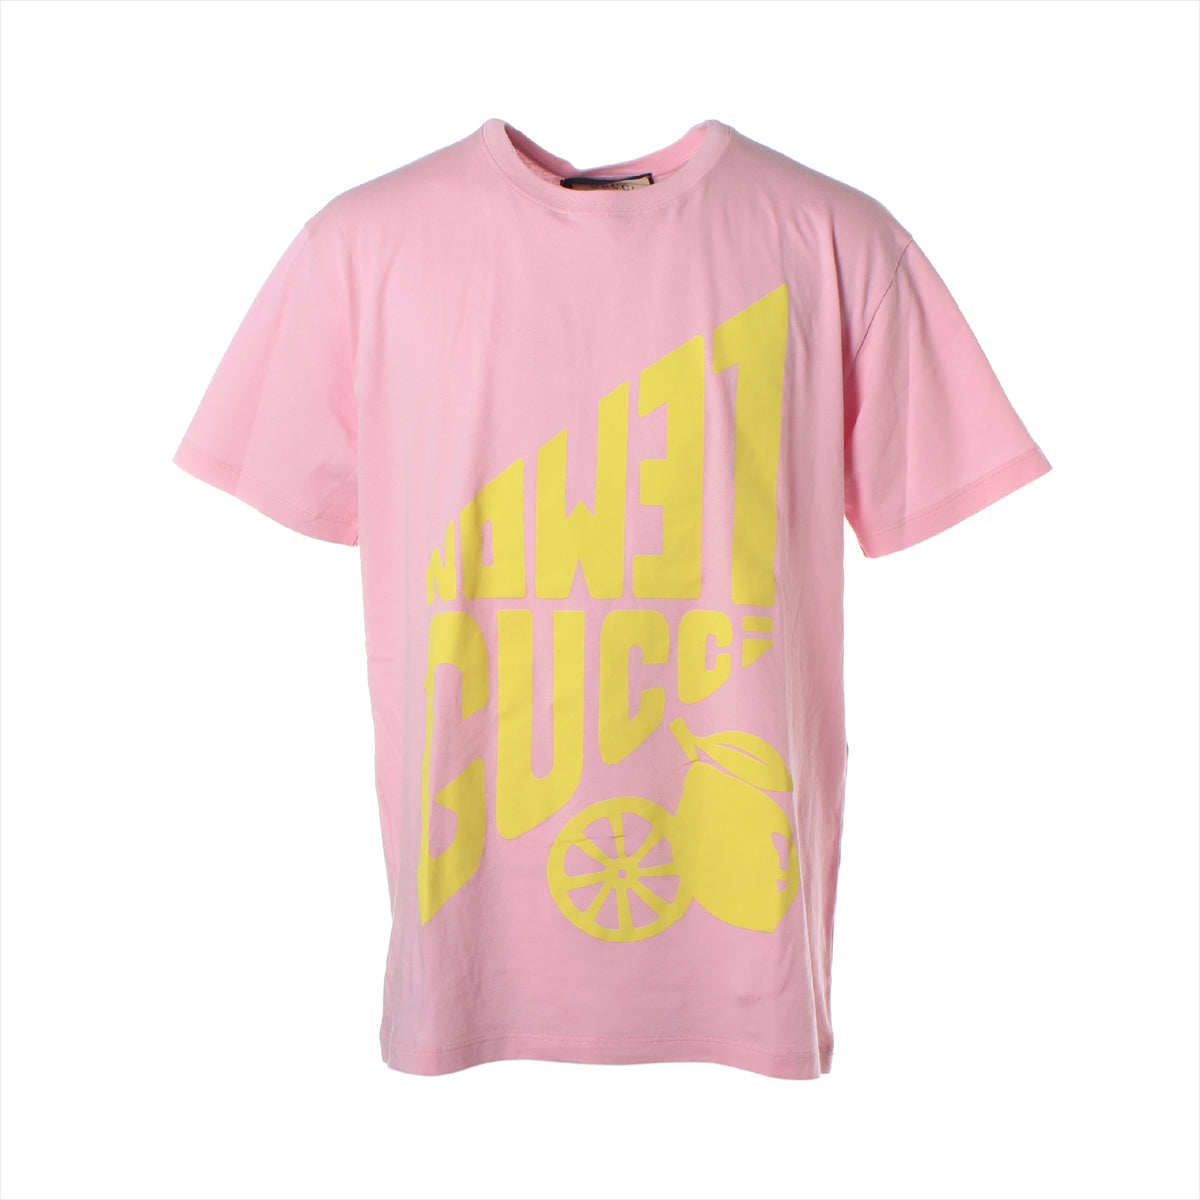 Gucci Cotton T-shirt S Men's Pink  615044